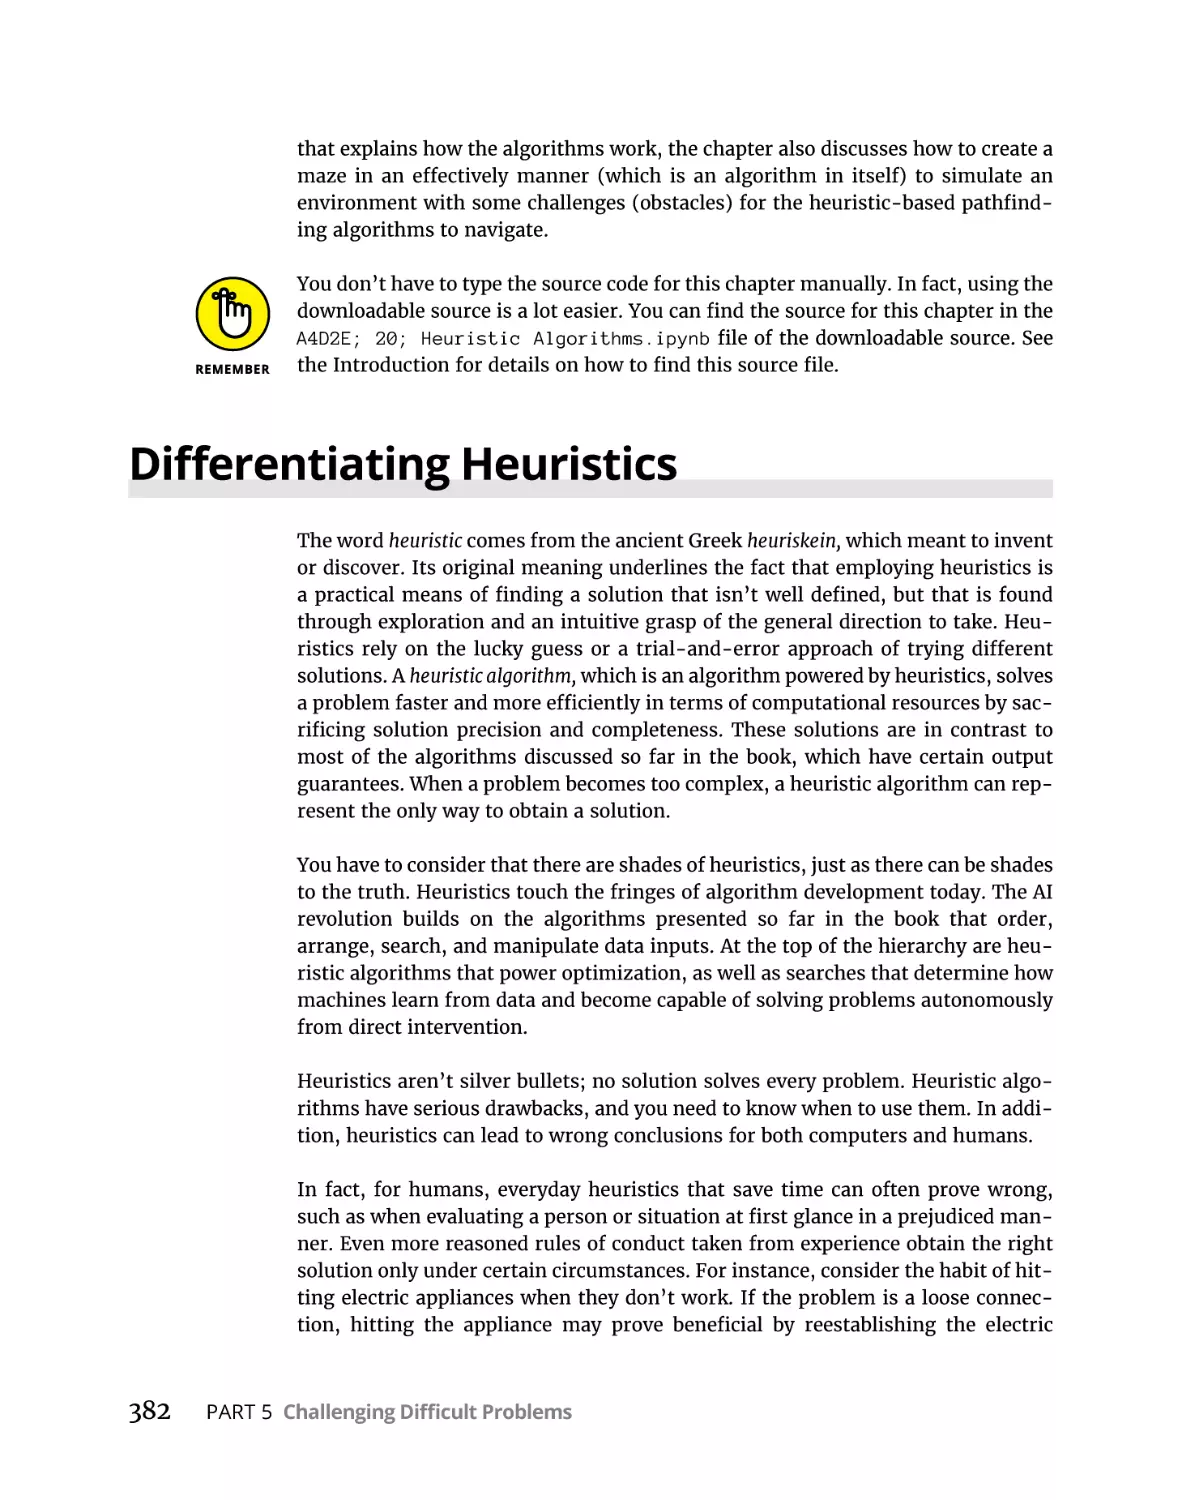 Differentiating Heuristics